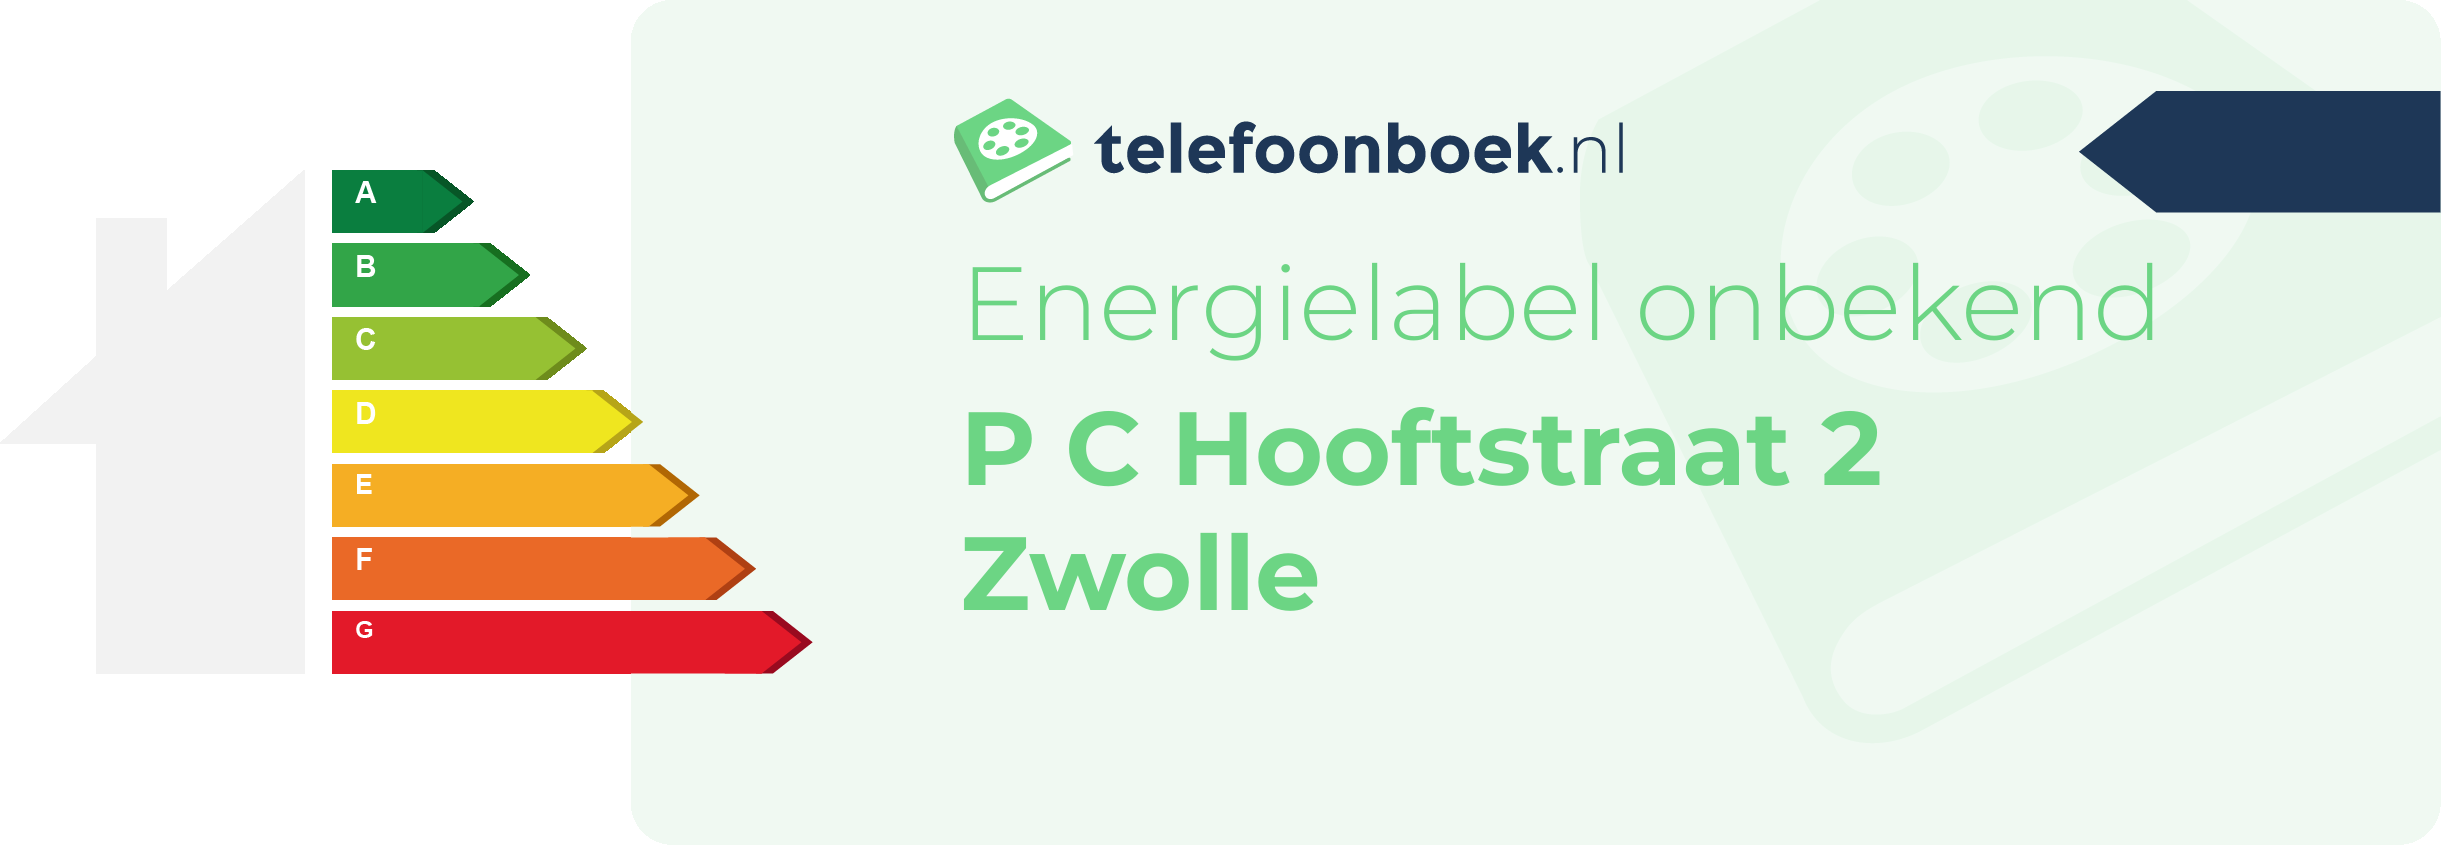 Energielabel P C Hooftstraat 2 Zwolle